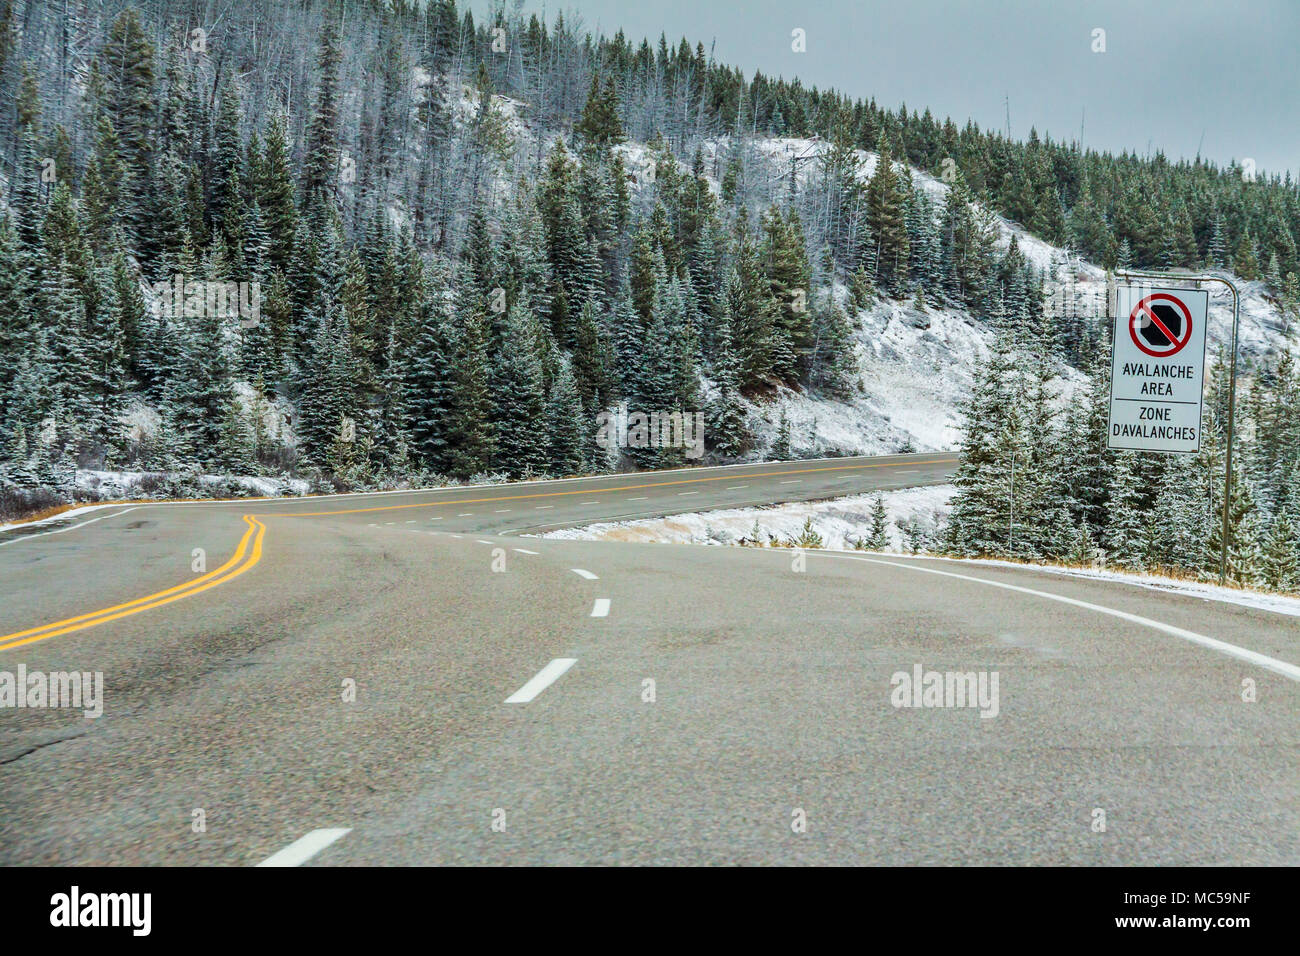 Route panoramique de neige à la fin du mois d'octobre sur l'autoroute 93 de la montagnes Rocheuses dans le Parc National de Kootenay en Colombie-Britannique, Canada. Banque D'Images